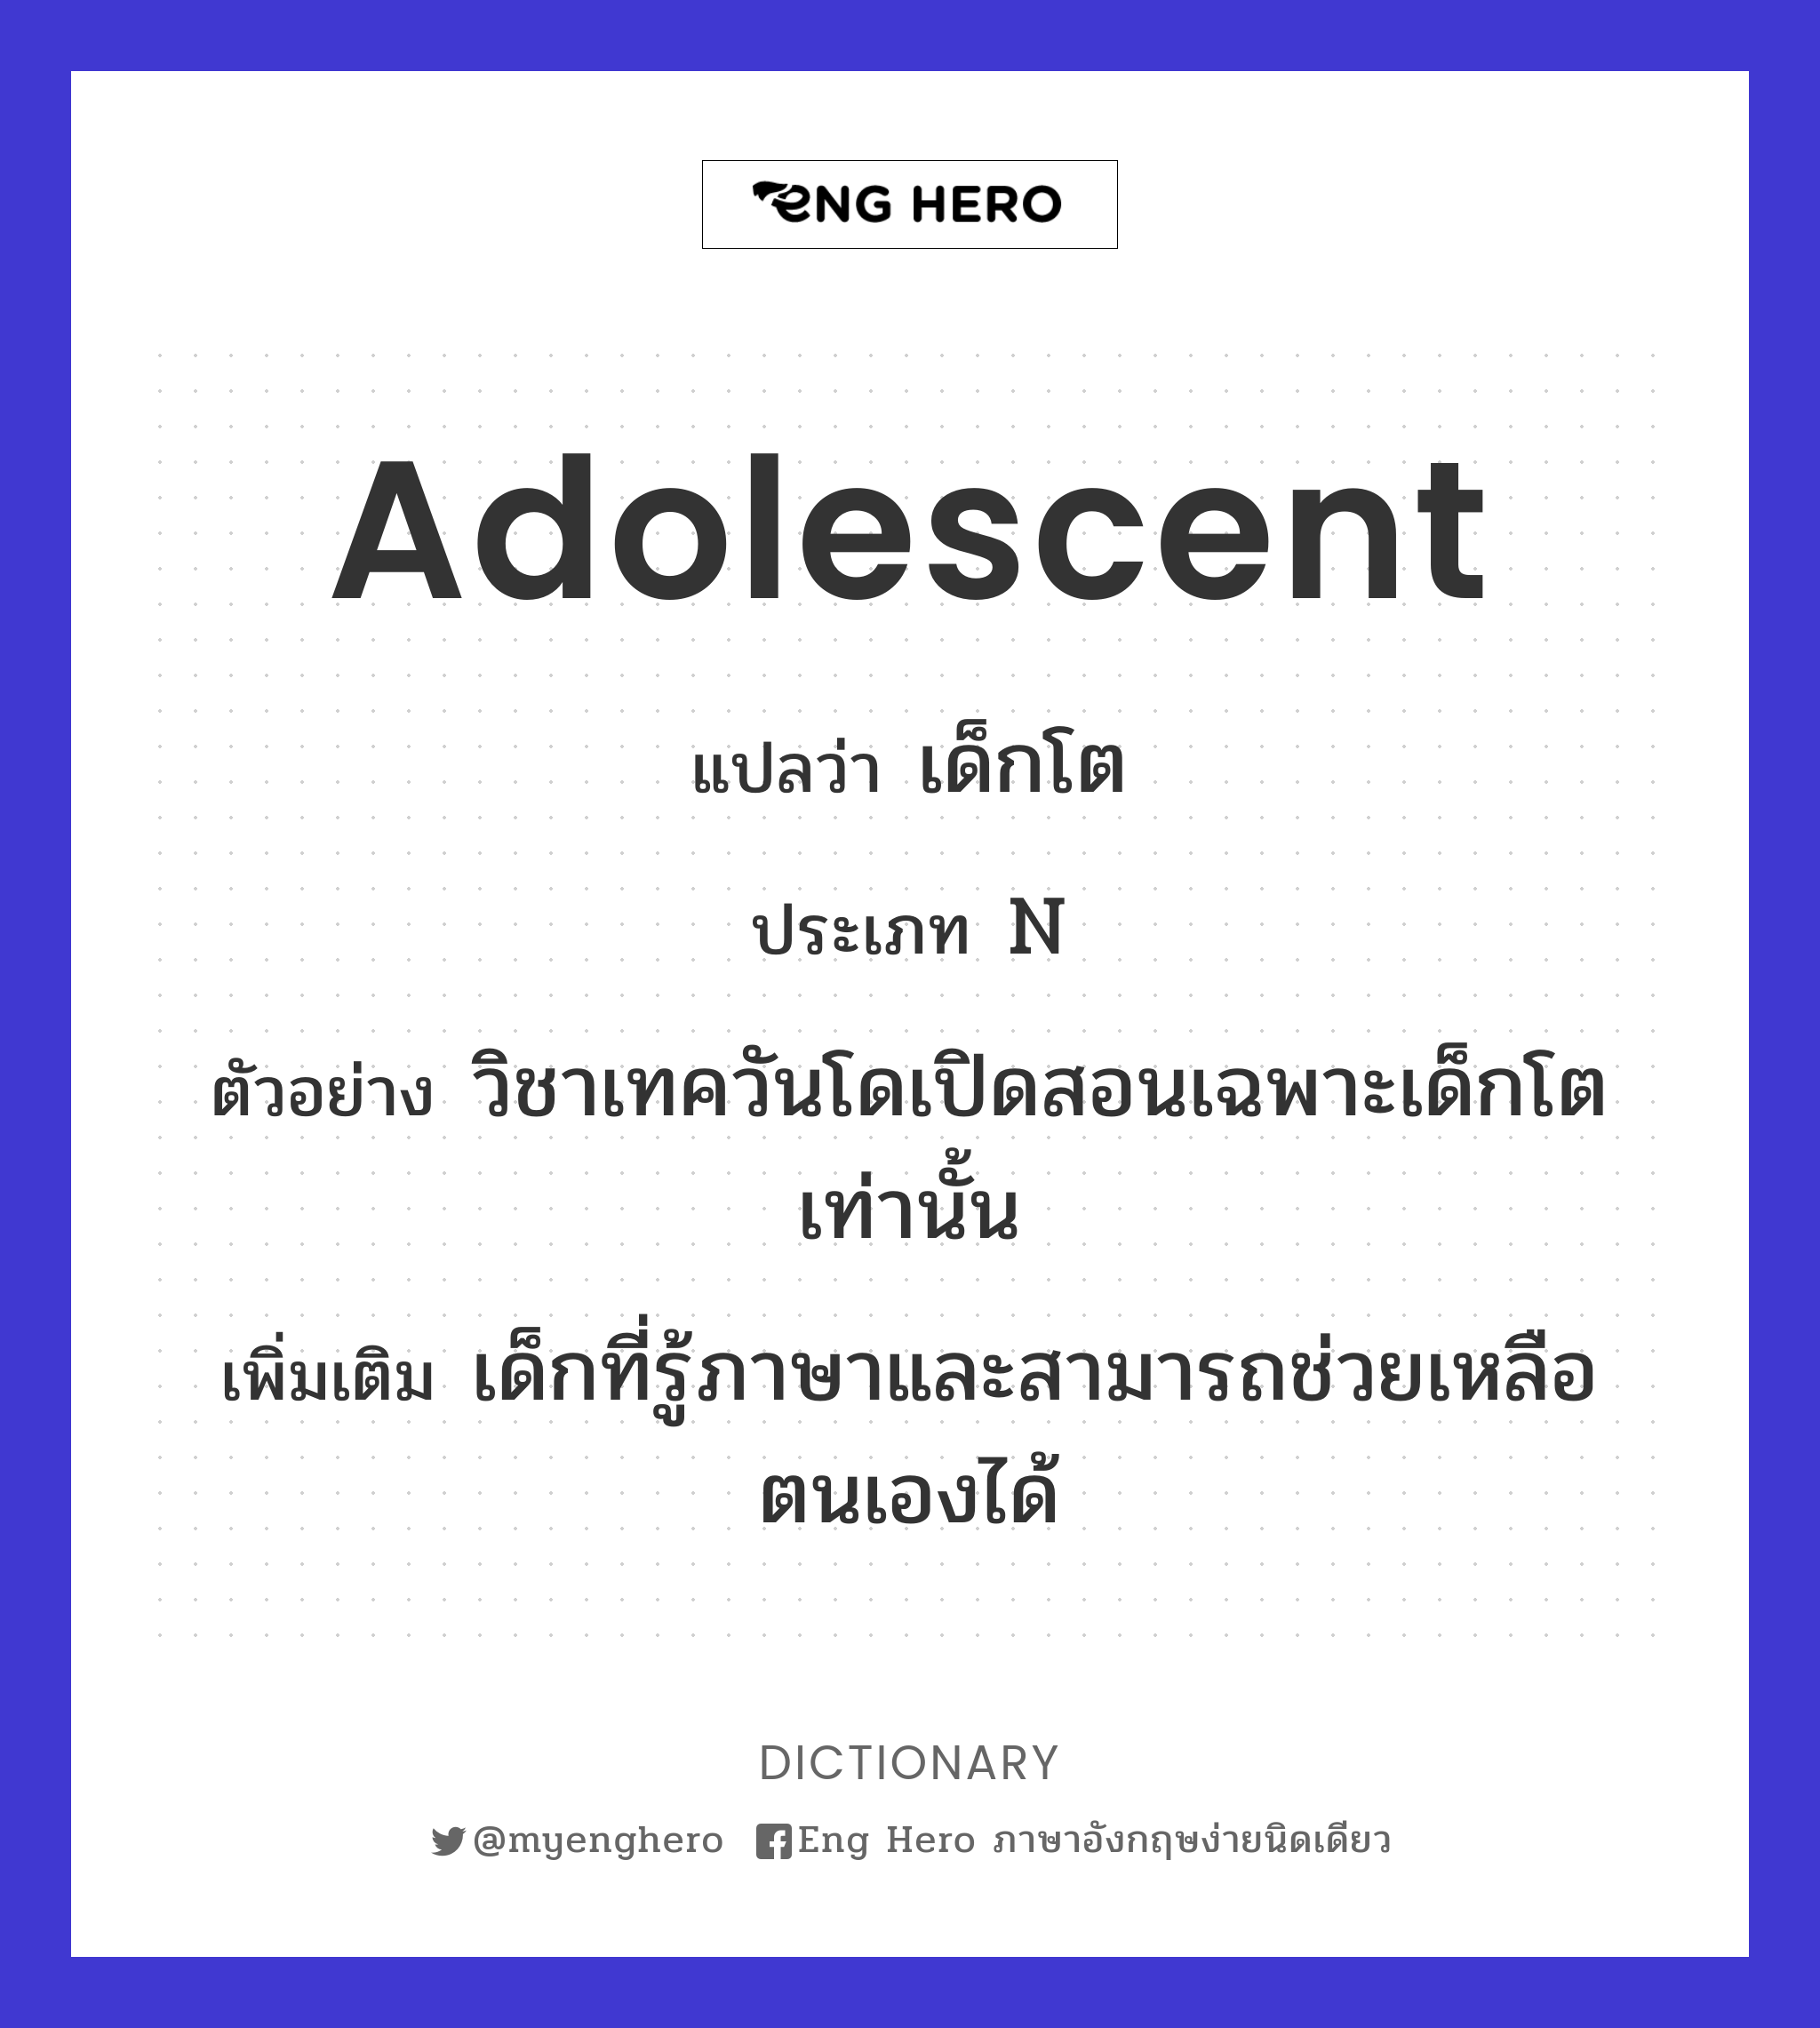 adolescent